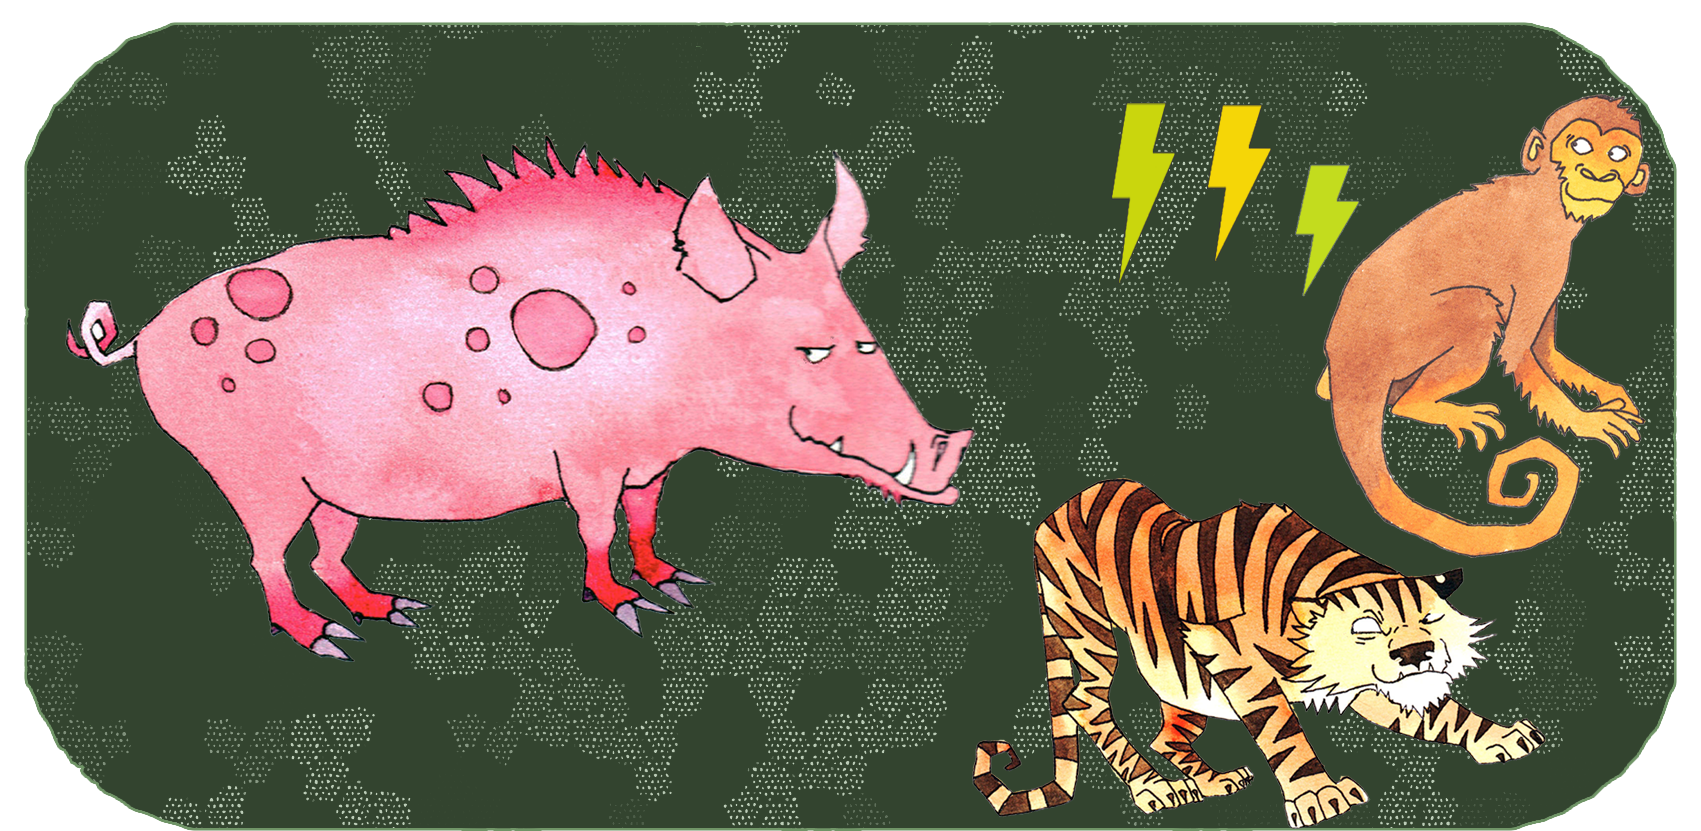 Chinese zodiac animals | 3 years apart | The Pig